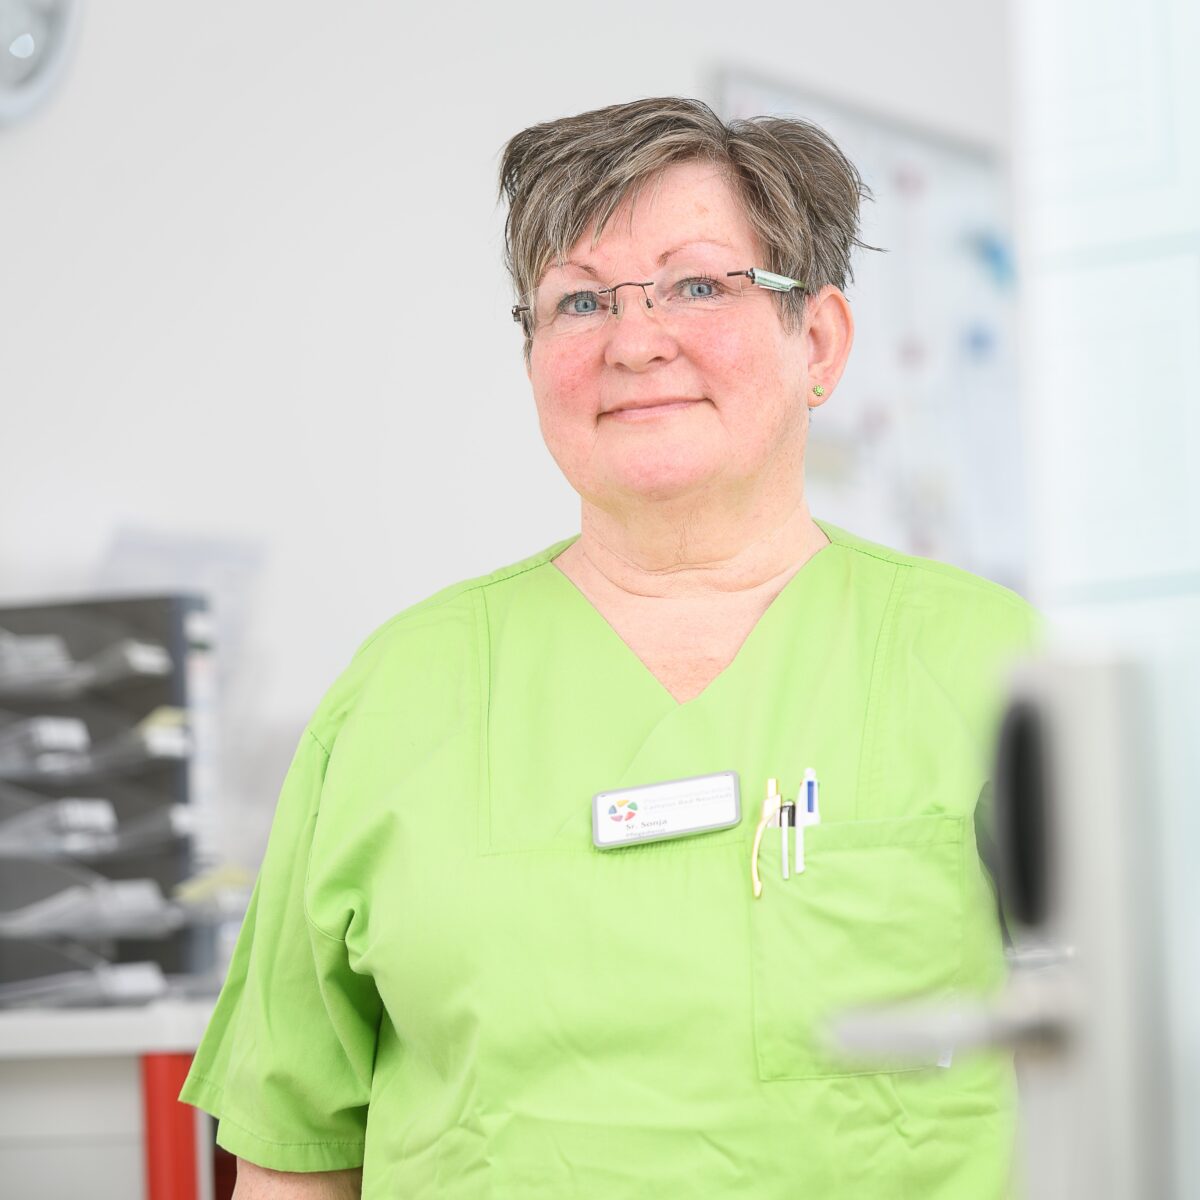 Employee in nursing service with work clothes from Rhön Klinikum Campus Bad Neustadt